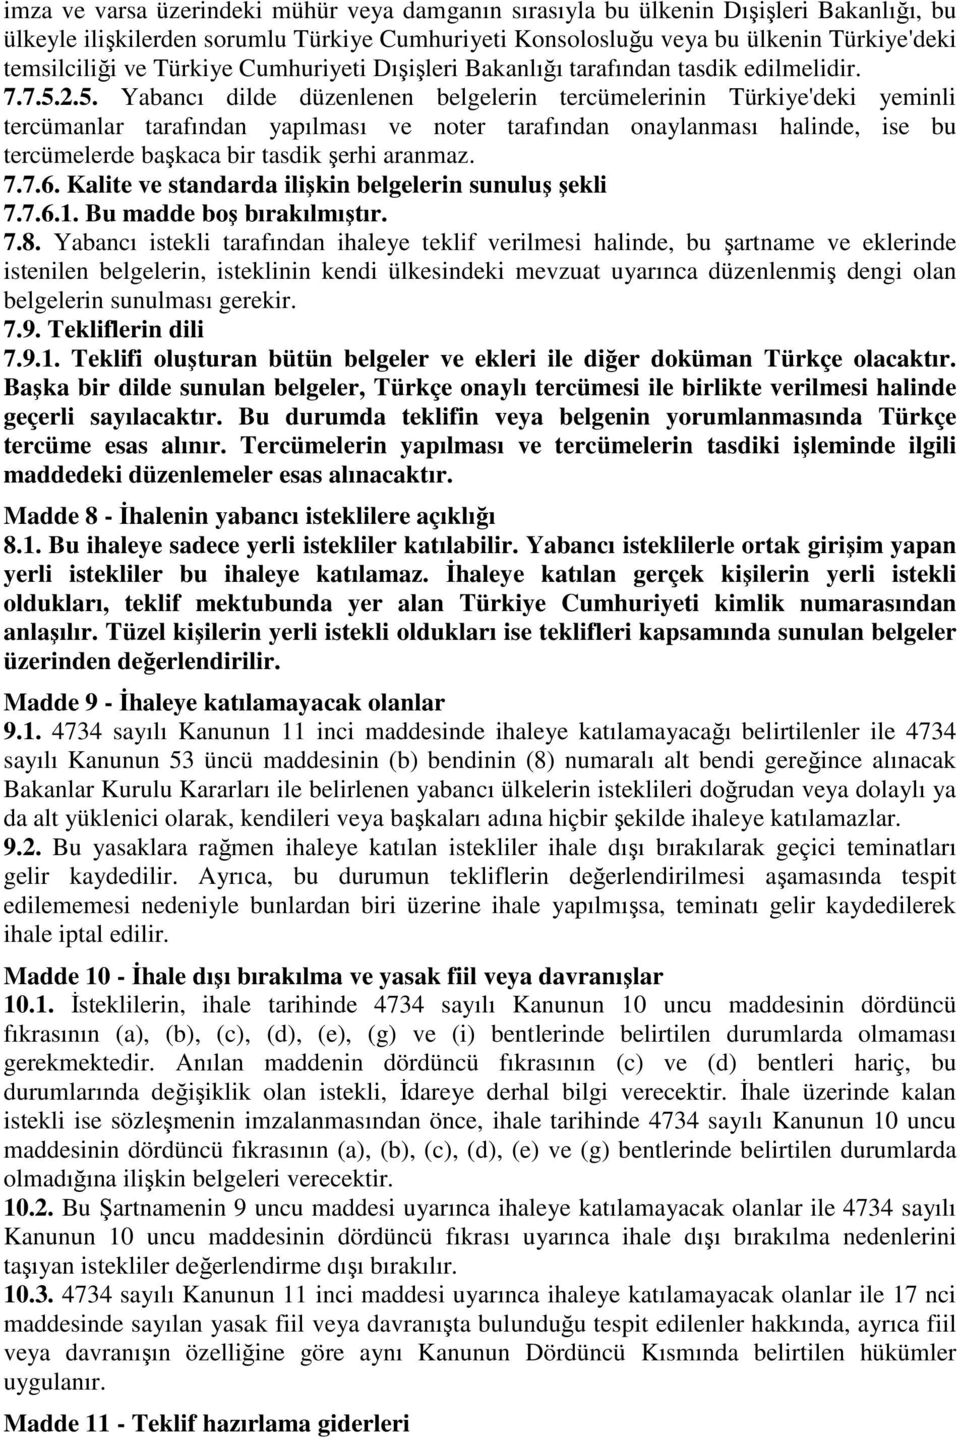 2.5. Yabancı dilde düzenlenen belgelerin tercümelerinin Türkiye'deki yeminli tercümanlar tarafından yapılması ve noter tarafından onaylanması halinde, ise bu tercümelerde başkaca bir tasdik şerhi